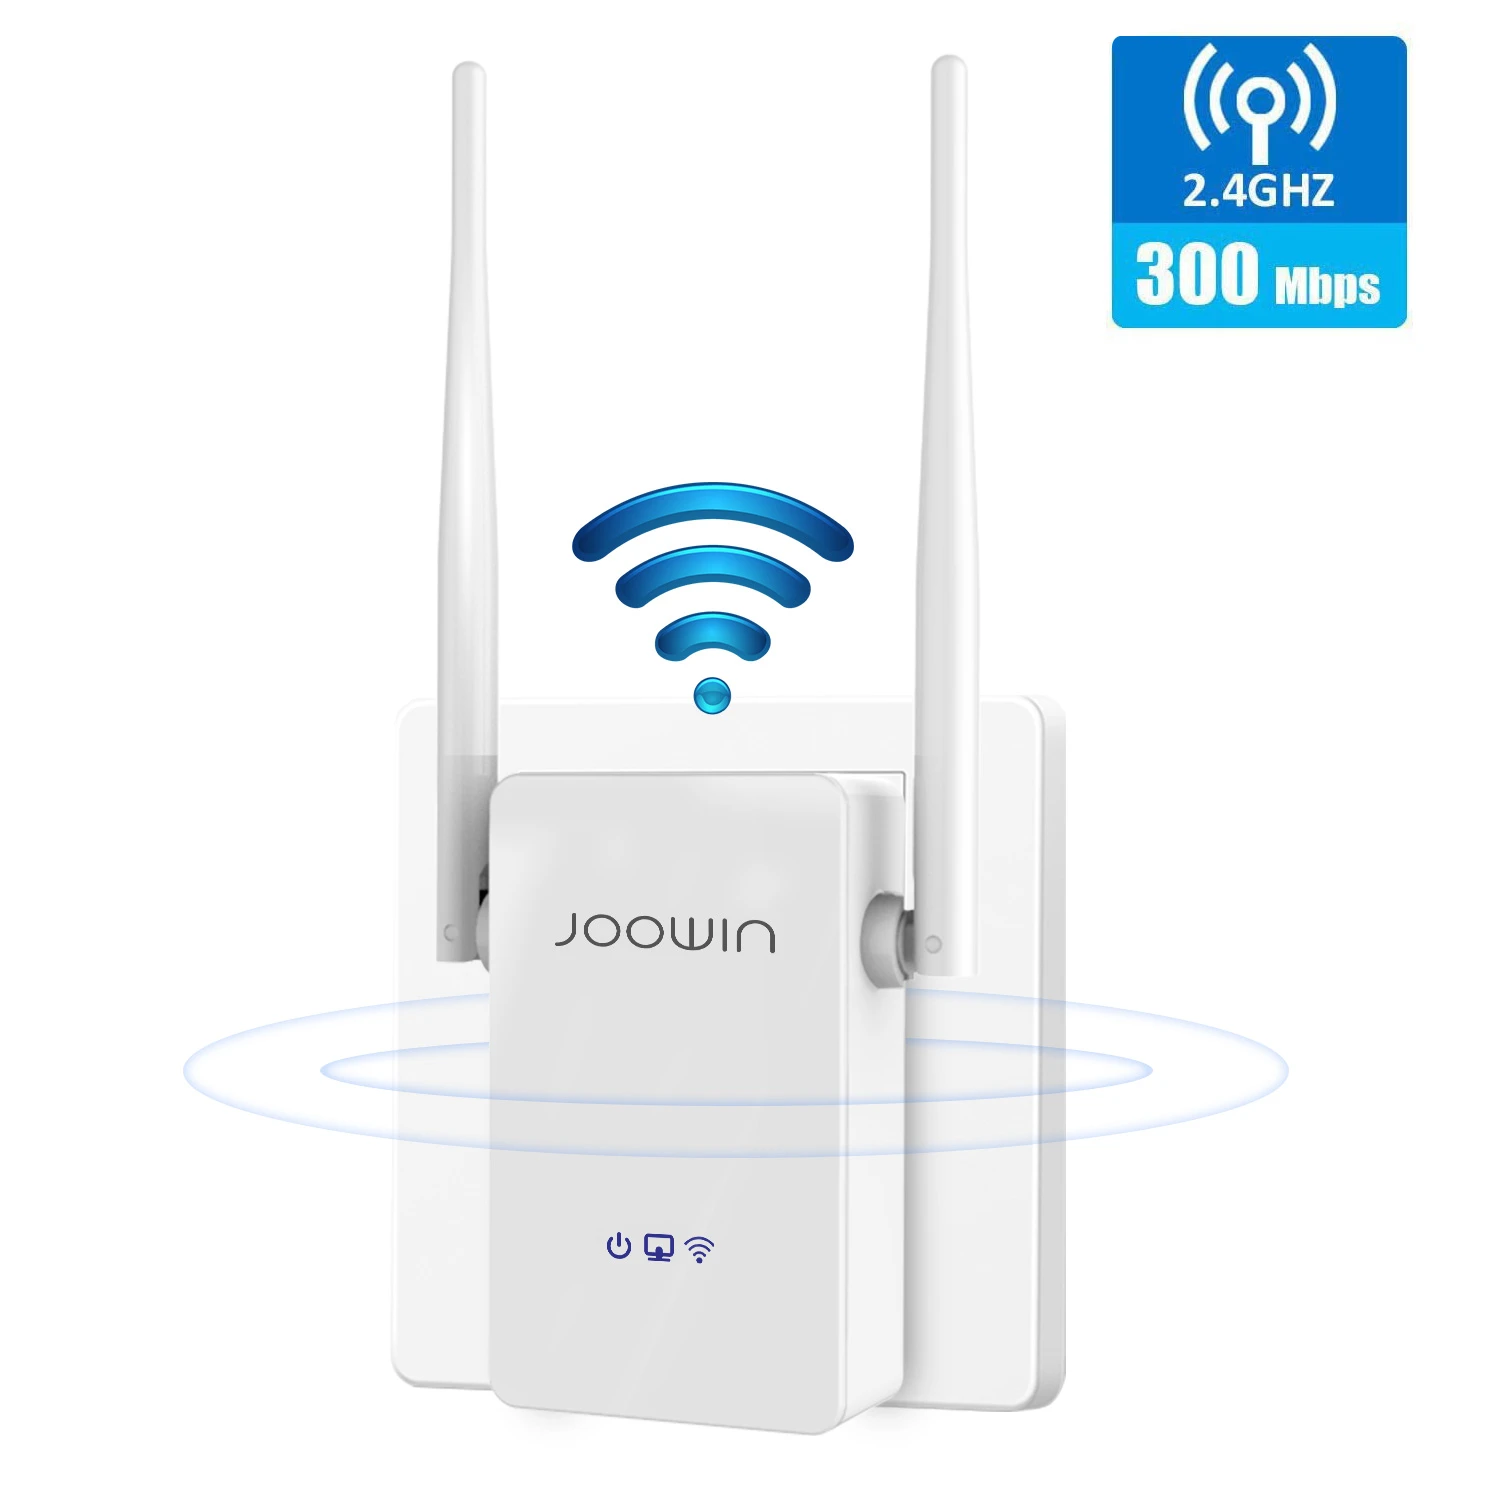 4g wifi signal booster JOOWIN 300Mbps Không Dây Nhà Repeater Mạng 2.4G Wifi Mở Rộng Tín Hiệu 2 * 5dbi Ăng Ten Tăng Cường Tín Hiệu JW-WR302S-V2 wifi repeater wireless signal booster